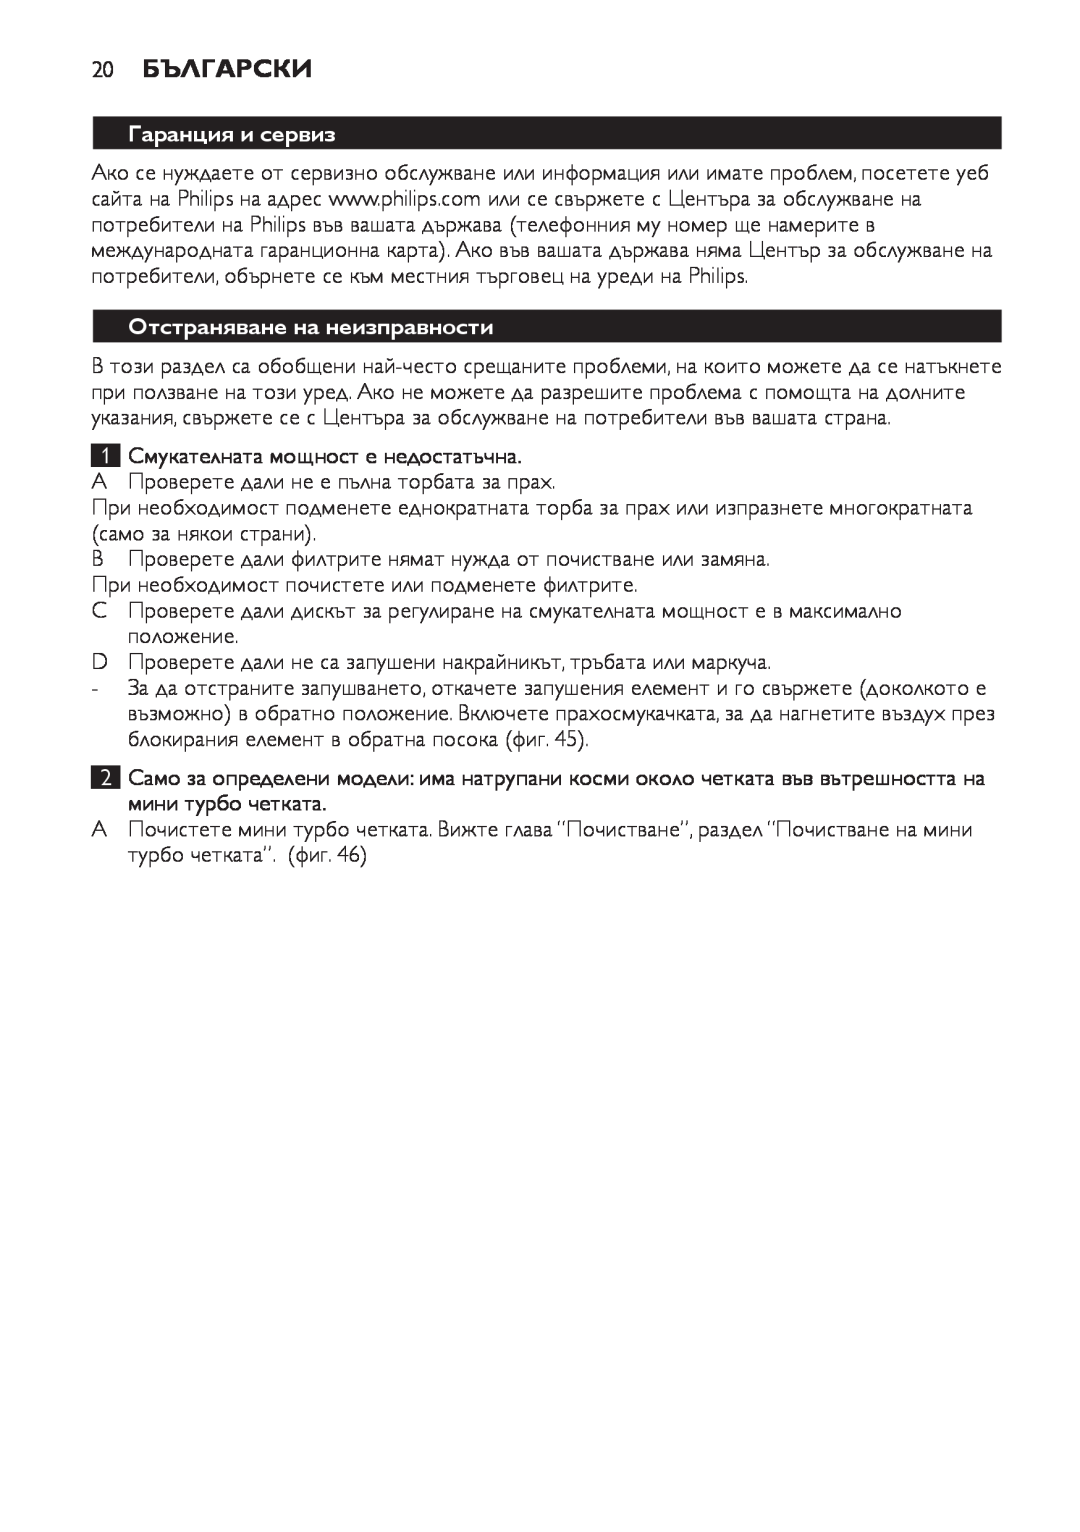 Philips FC8920-FC8910 manual 20Български, Гаранция и сервиз, Отстраняване на неизправности 